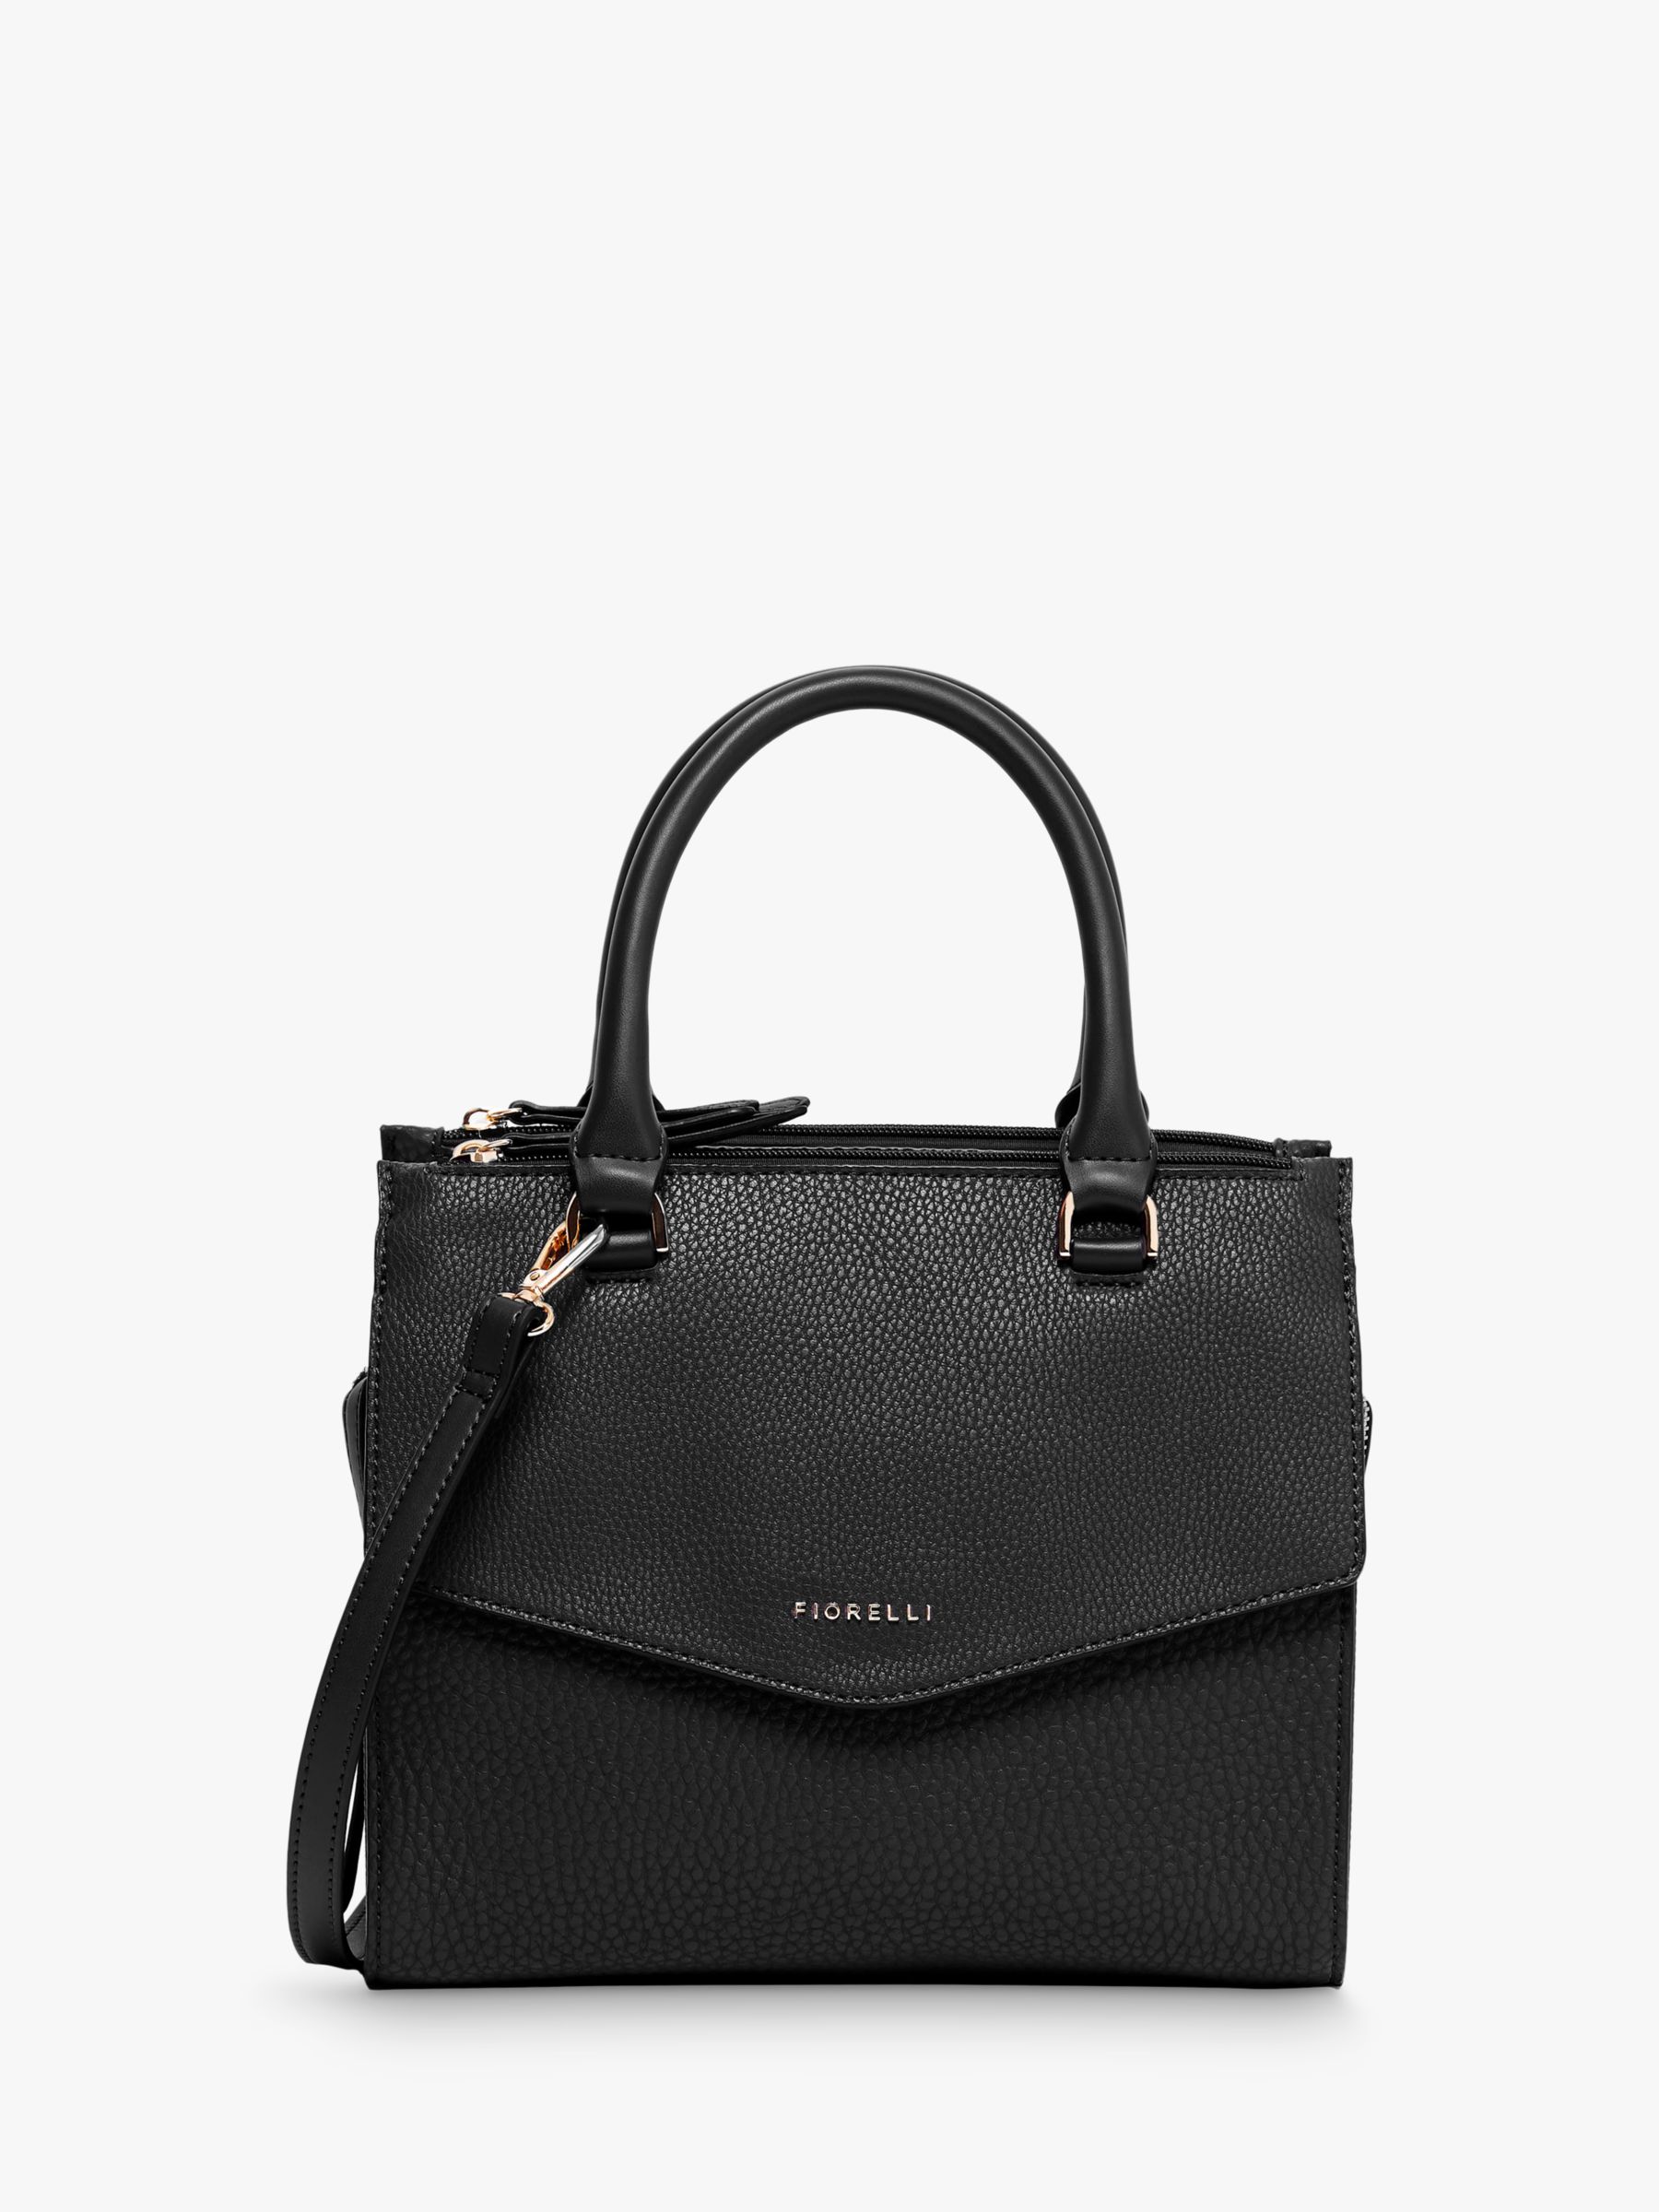 Fiorelli Mia Grab Bag, Black